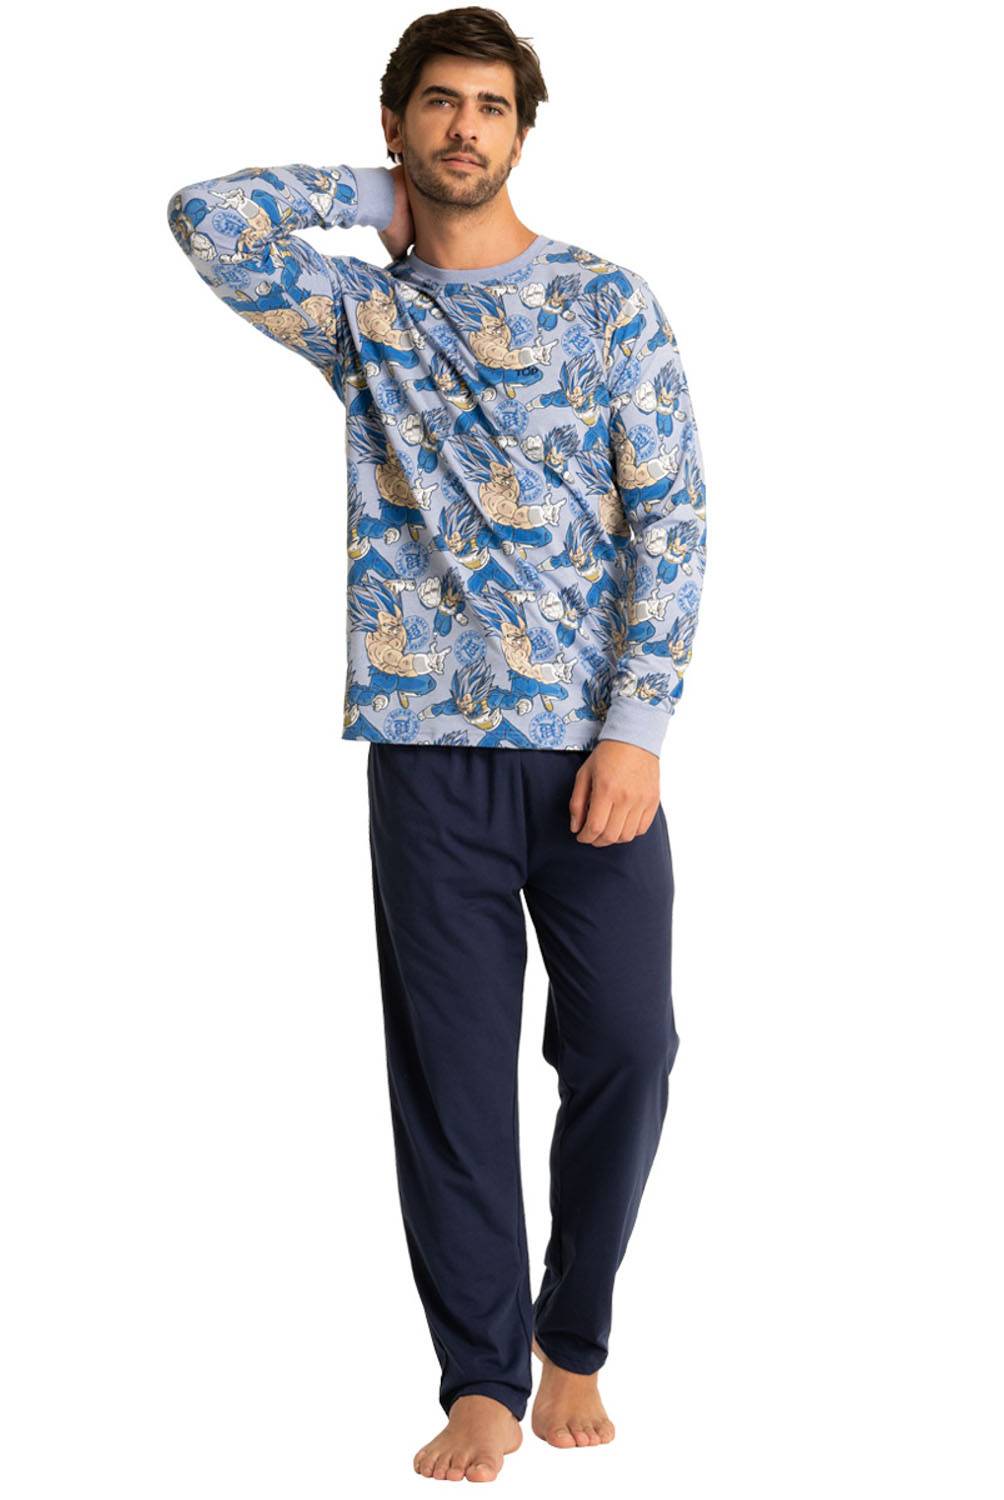 Cinco pijamas largos de hombre para la temporada de invierno que